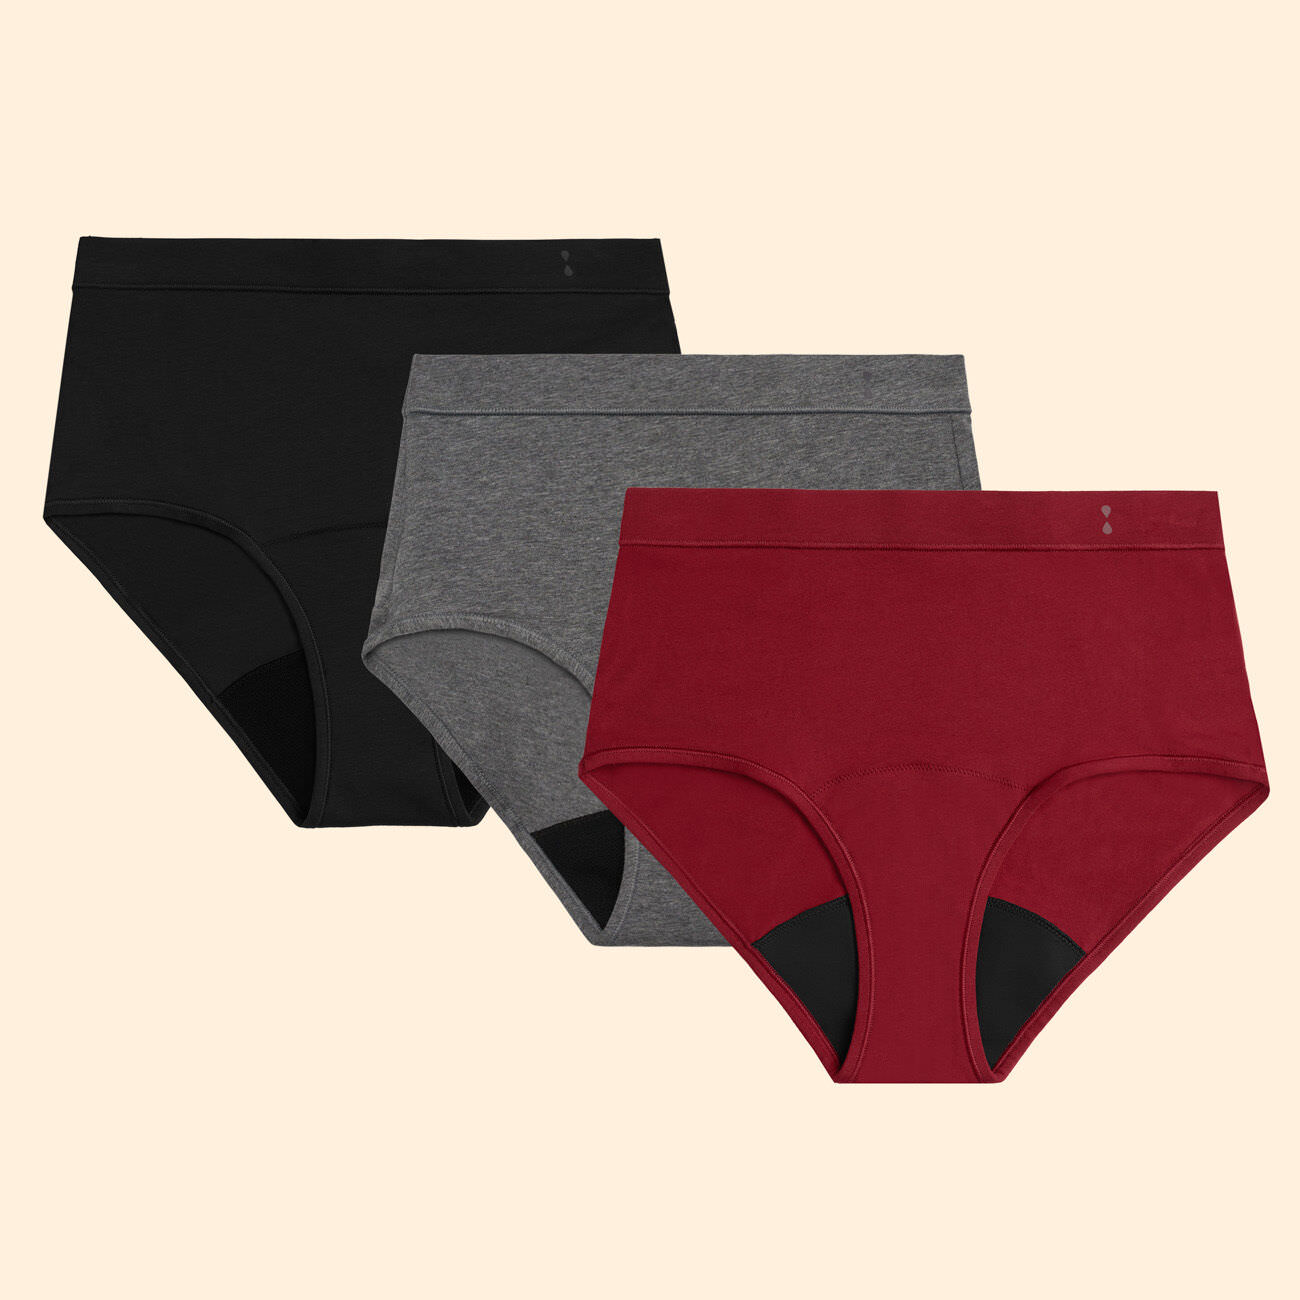  Speax by Thinx Hi-Waist Incontinence Underwear for